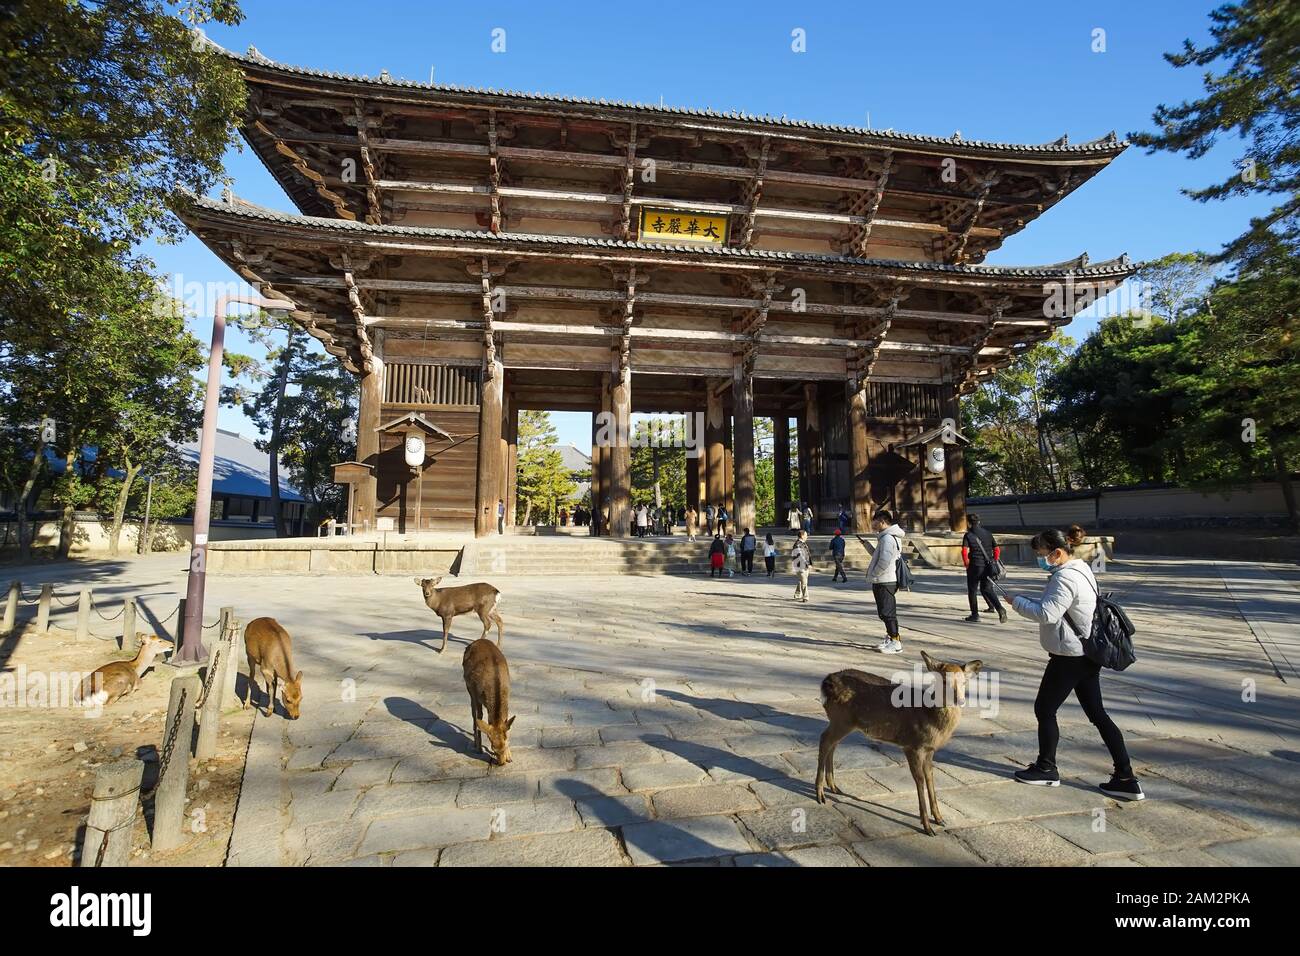 Nara, Giappone - 16 dicembre 2019 : la grande porta di legno del Tempio Todaiji, questa è la più famosa destinazione di viaggio della città di Nara nella zona di Kansai Foto Stock